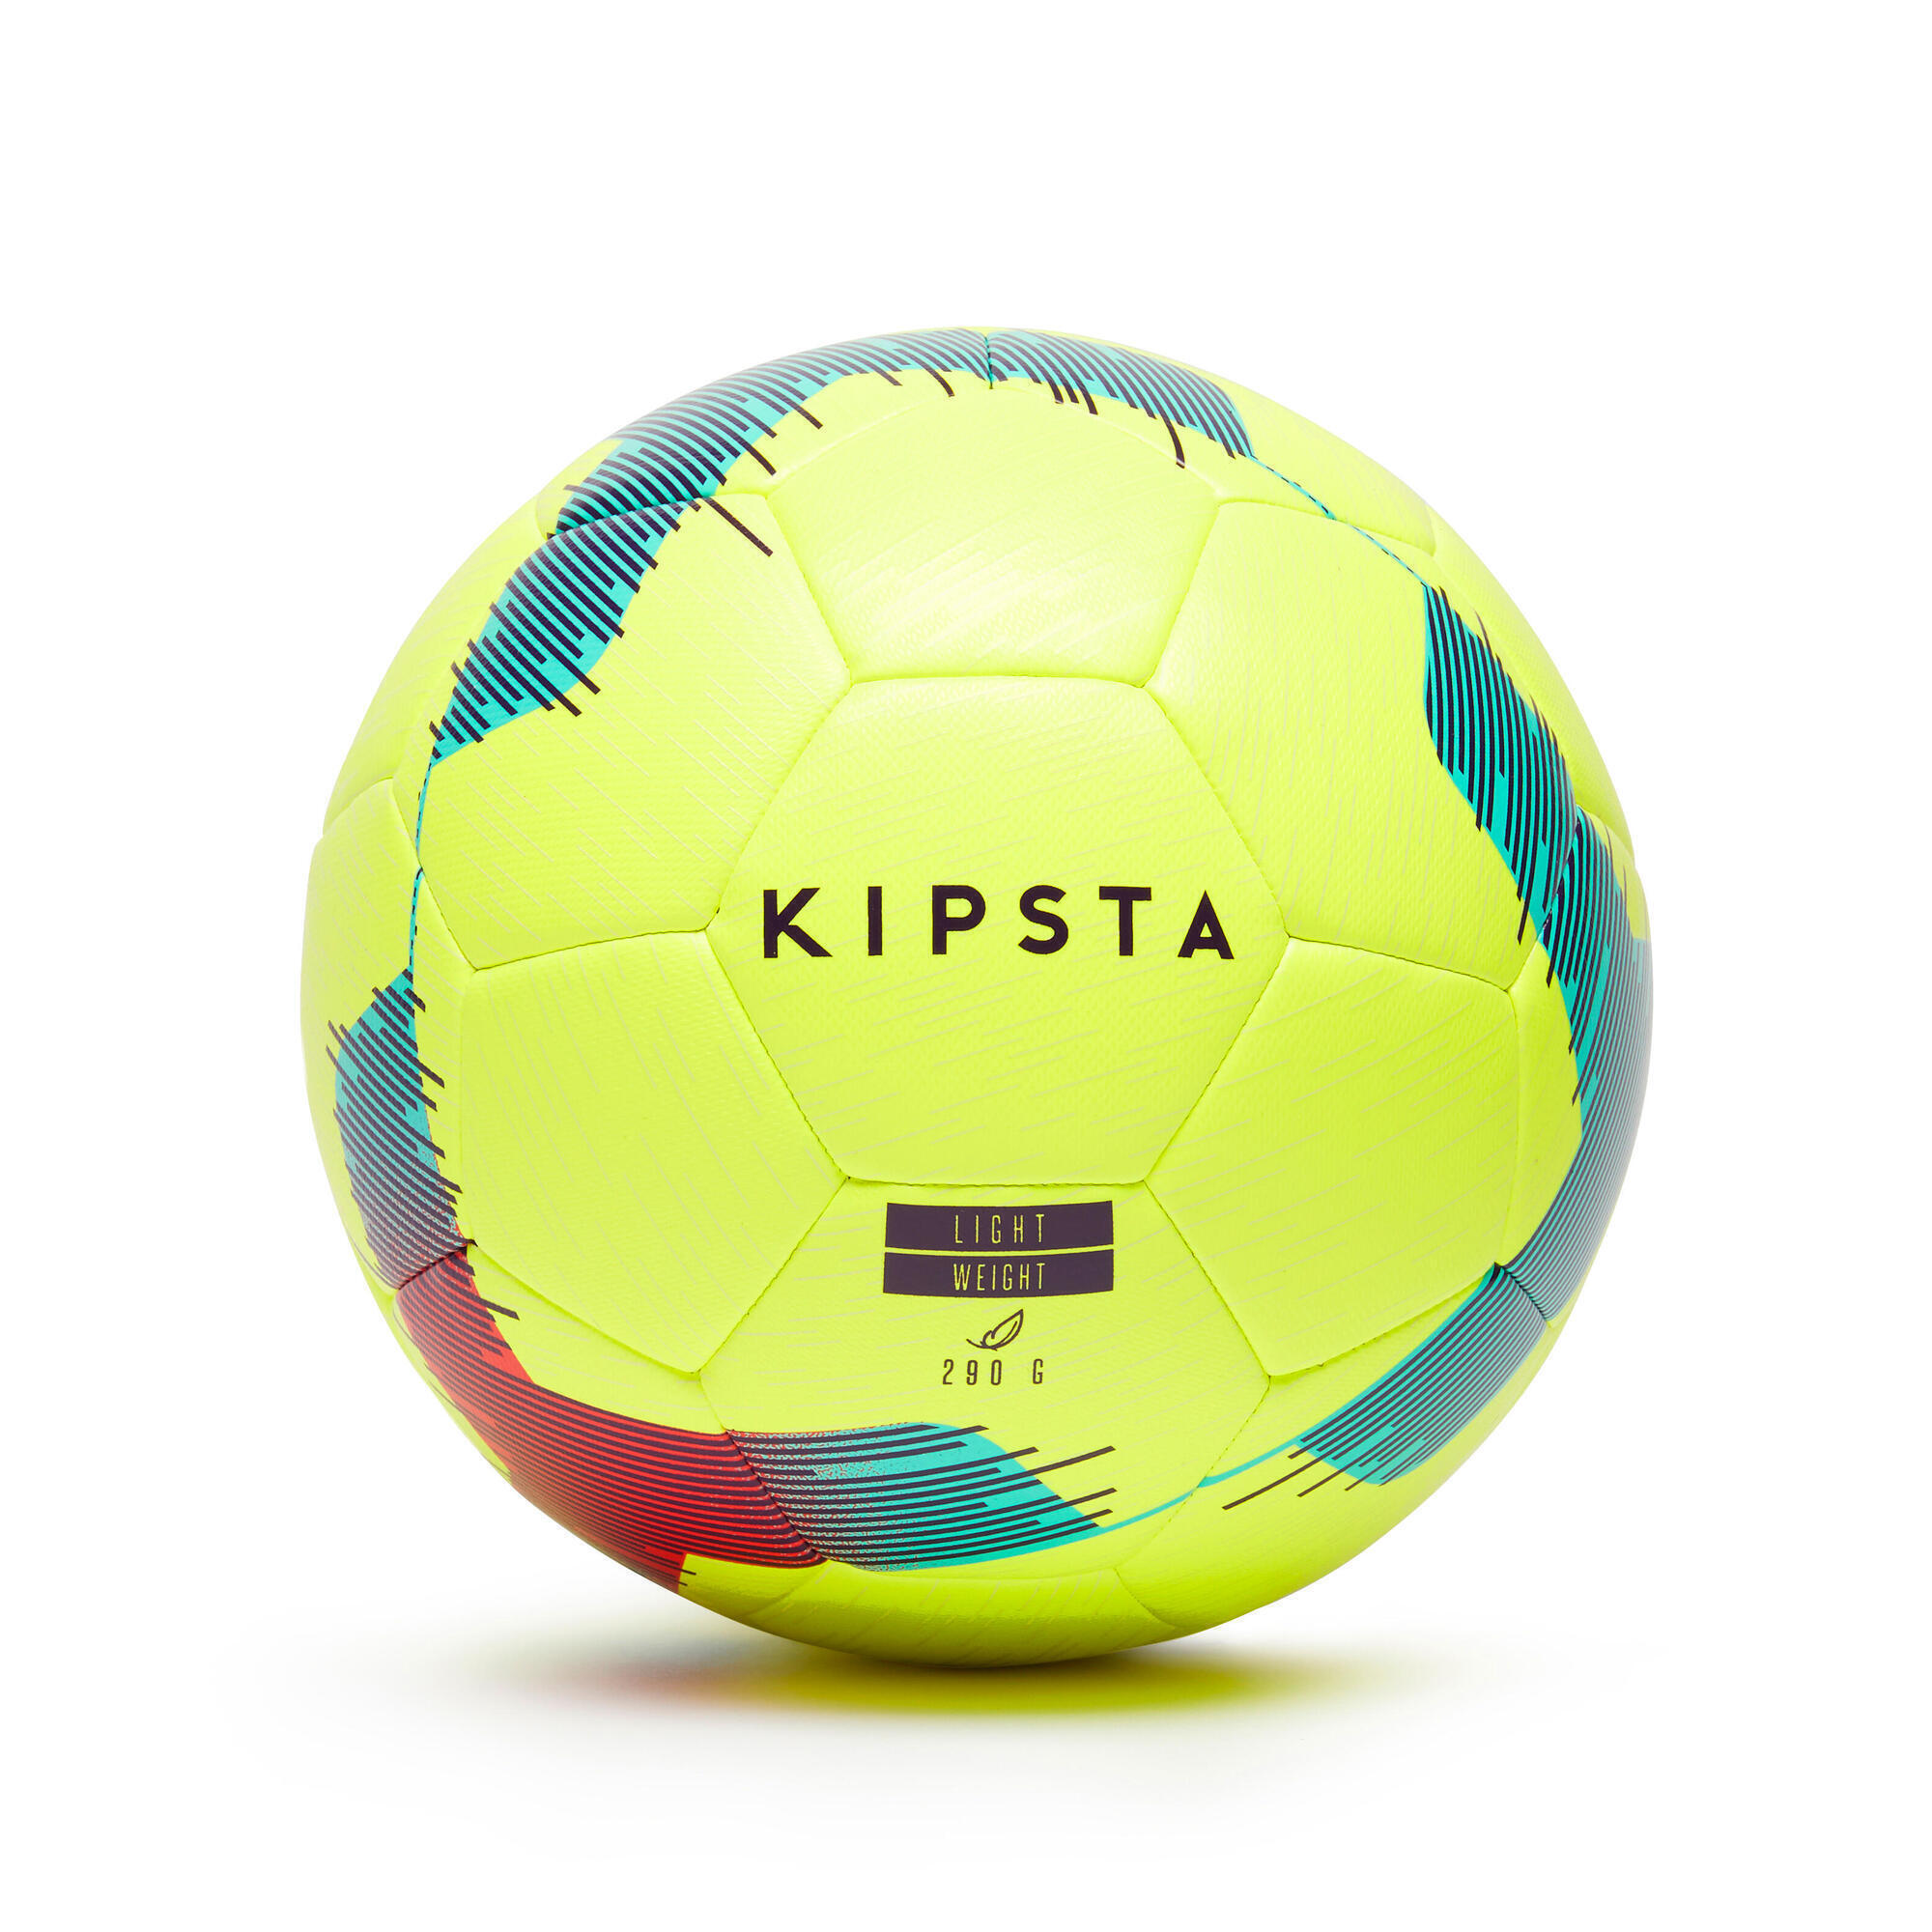 Hybrid light. Мяч кипста 5 f500. Футбольный мяч f500 Light размер 4 желтый KIPSTA. Кипста мяч f 500. Футбольный мяч KIPSTA f500 Hybrid.